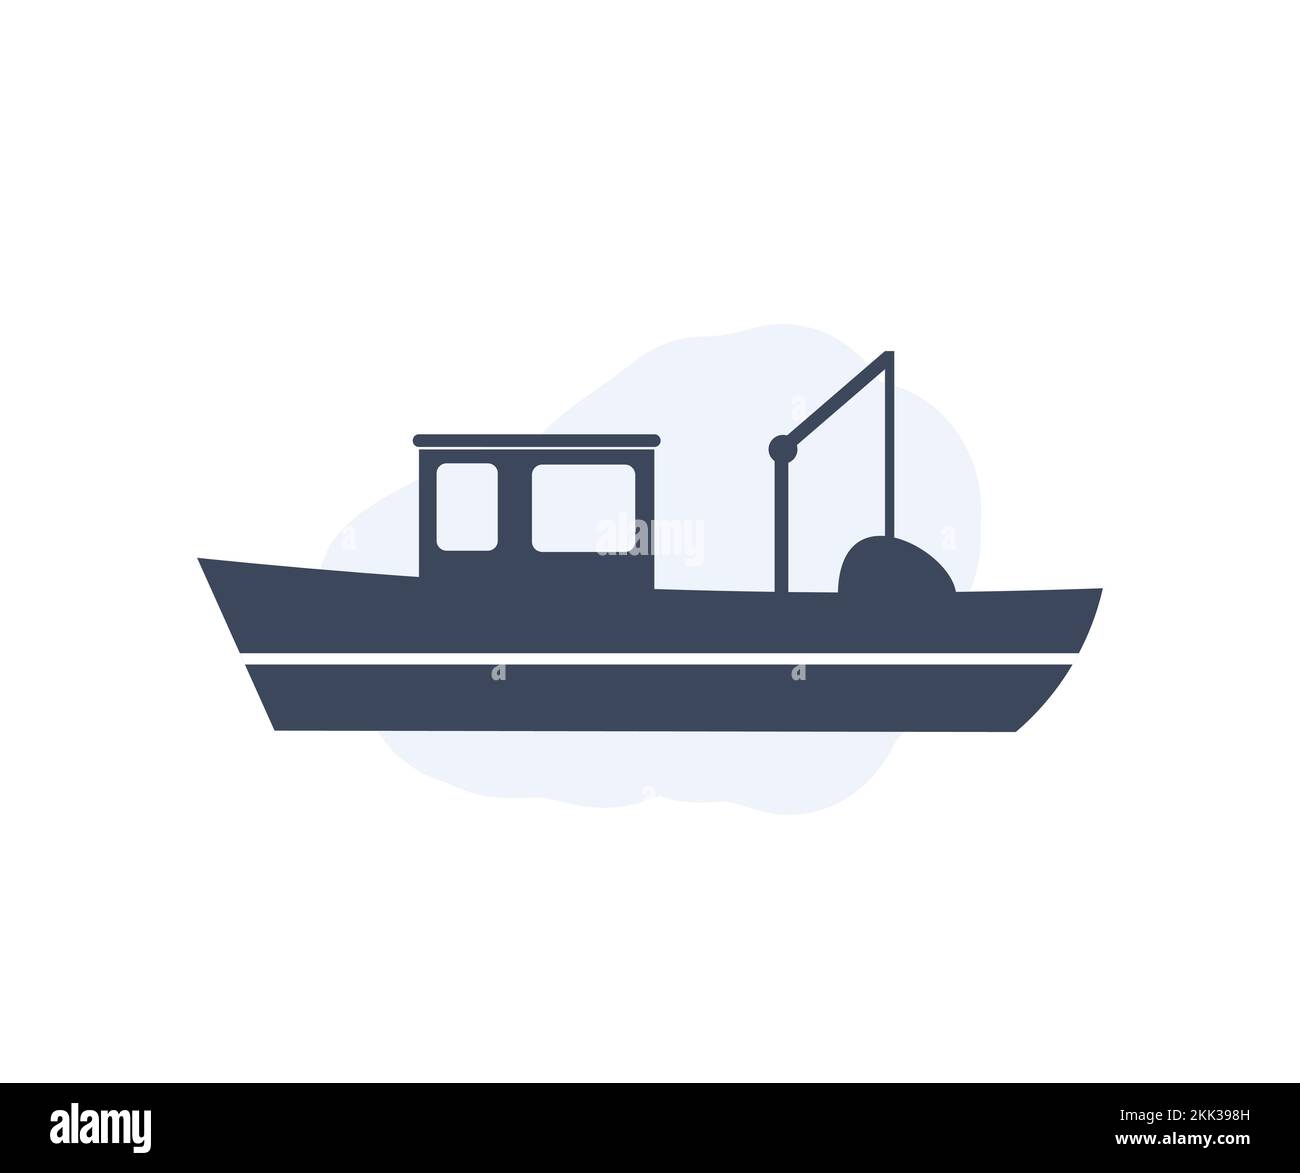 Barco de pesca Engulf un barco de pesca en el diseño del logotipo del agua. Silueta de barco de pesca. Mar viajes transporte yate, arrastrero, marinero náutico. Ilustración del Vector